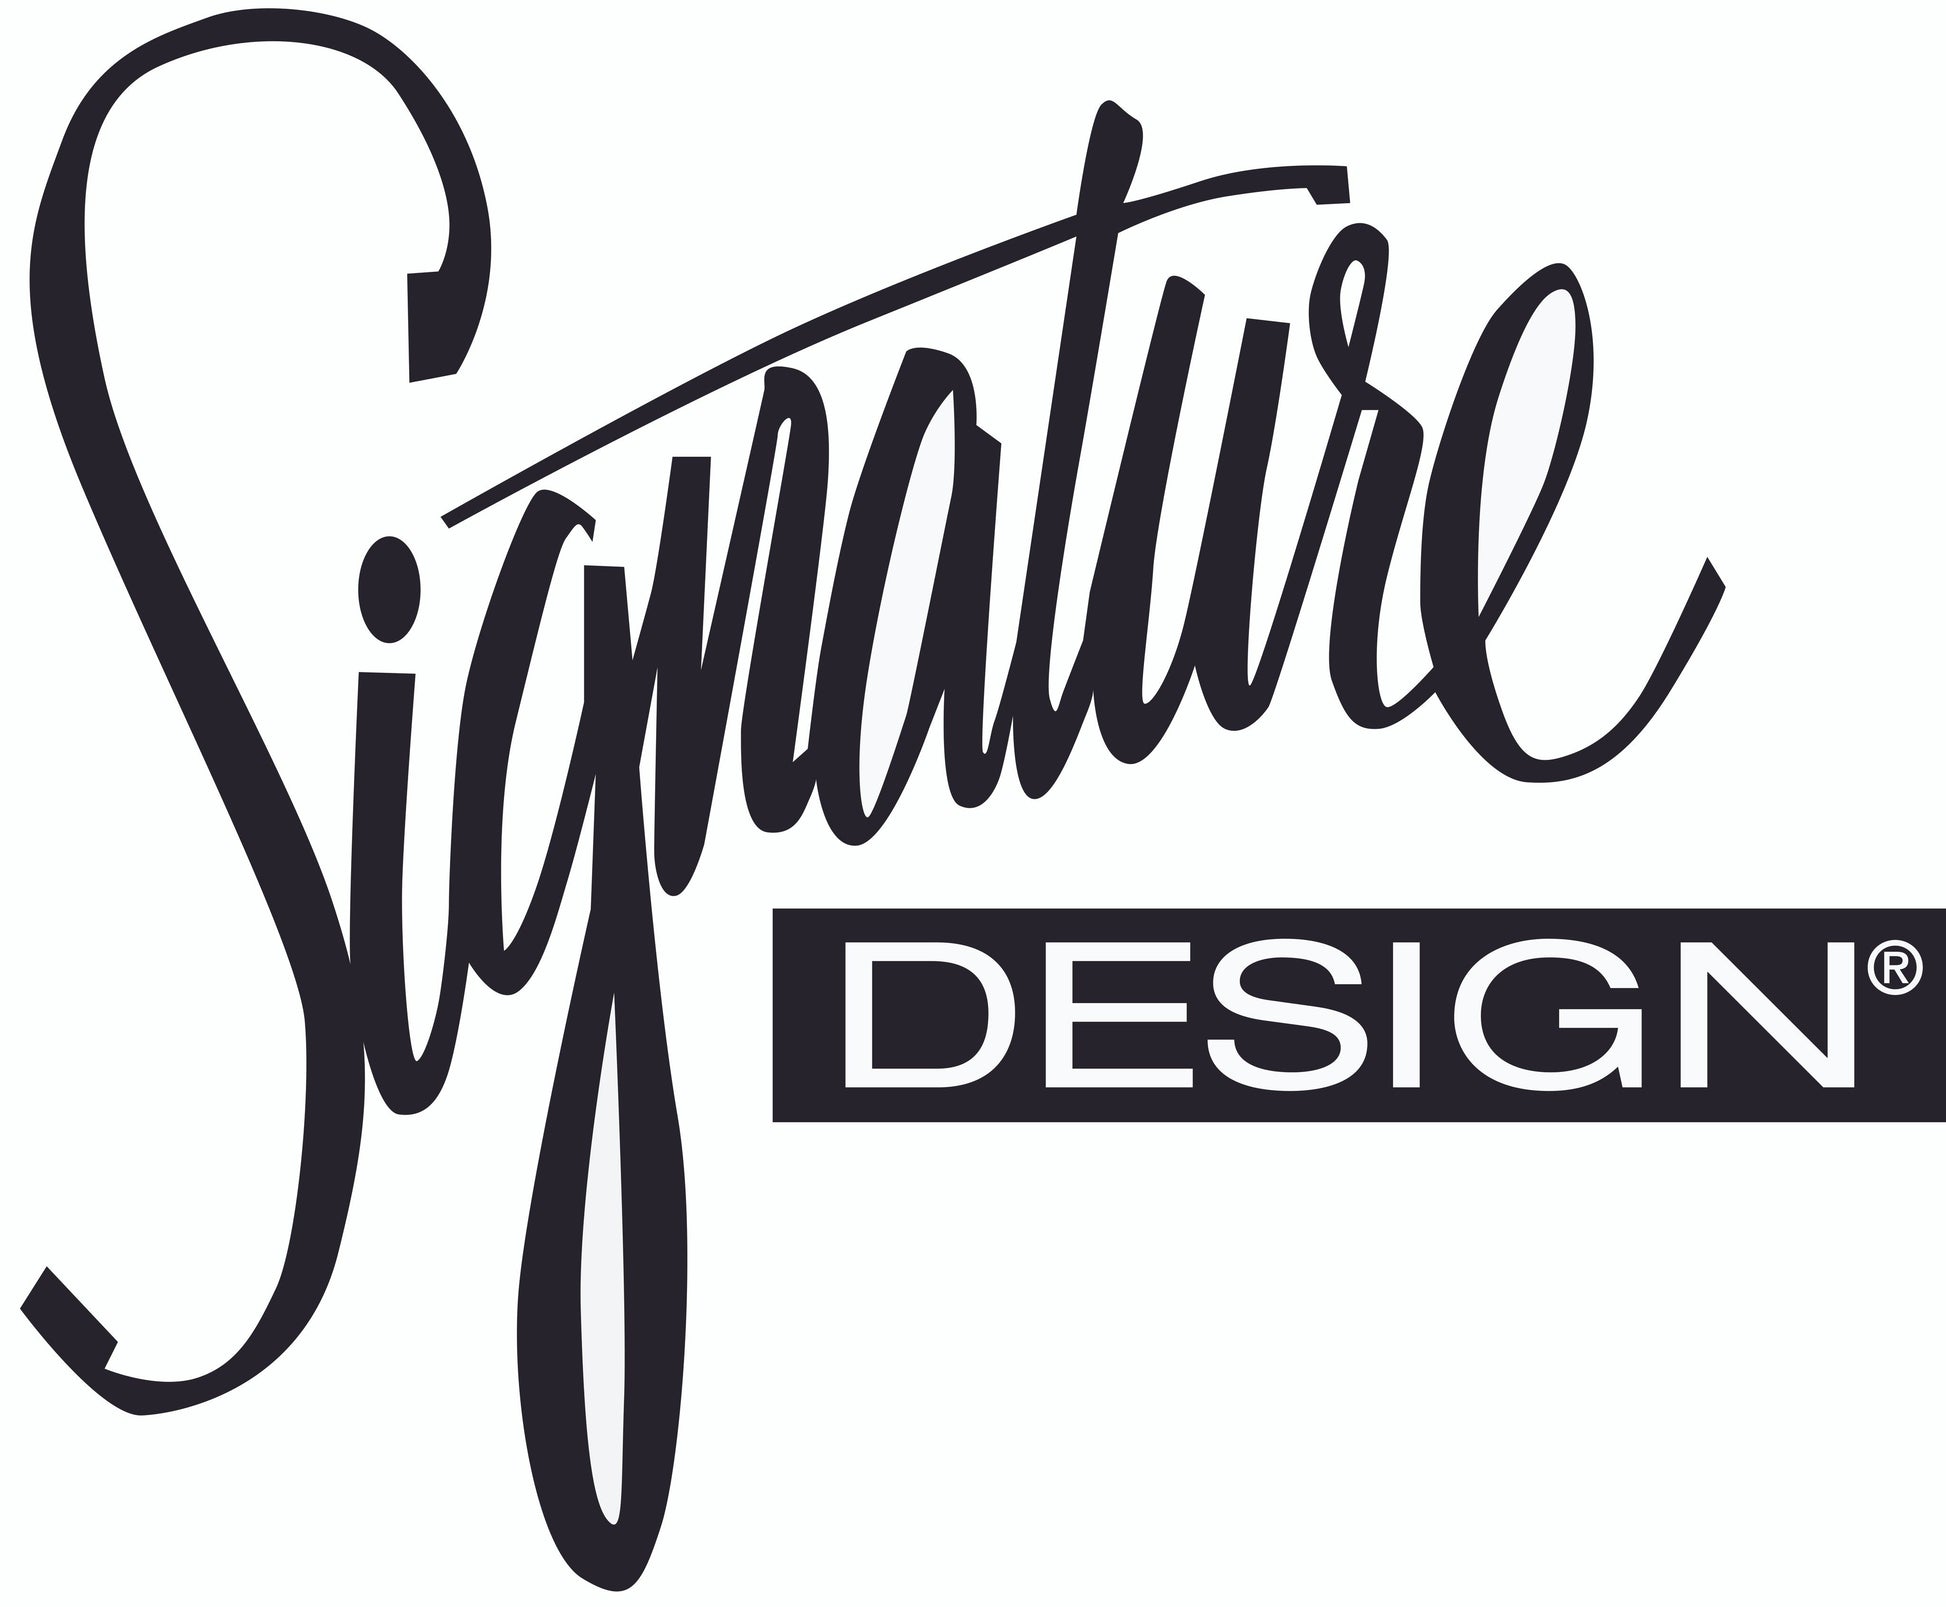 Titania Home Office Small Desk Signature Design by Ashley®